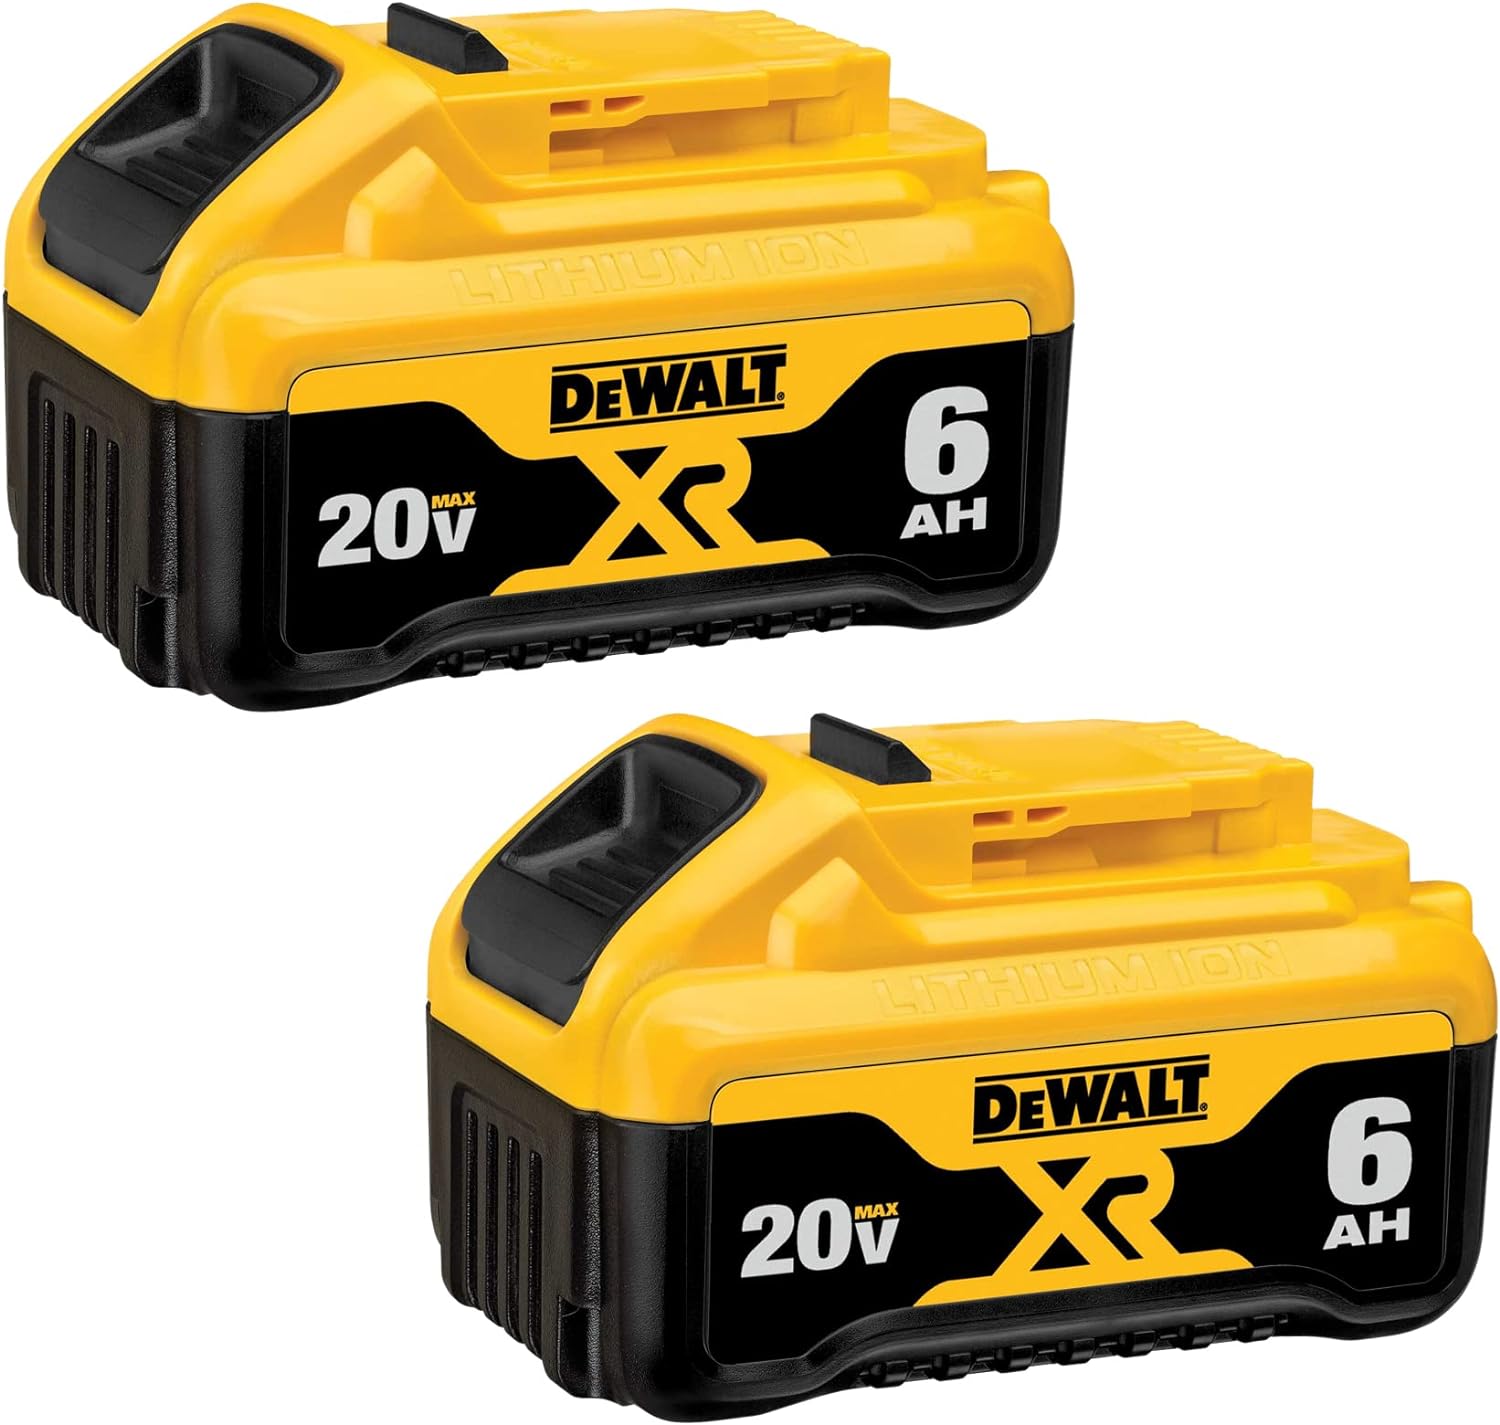 DEWALT 20V MAX Battery, 6 Ah, 2-Pack (DCB206-2)